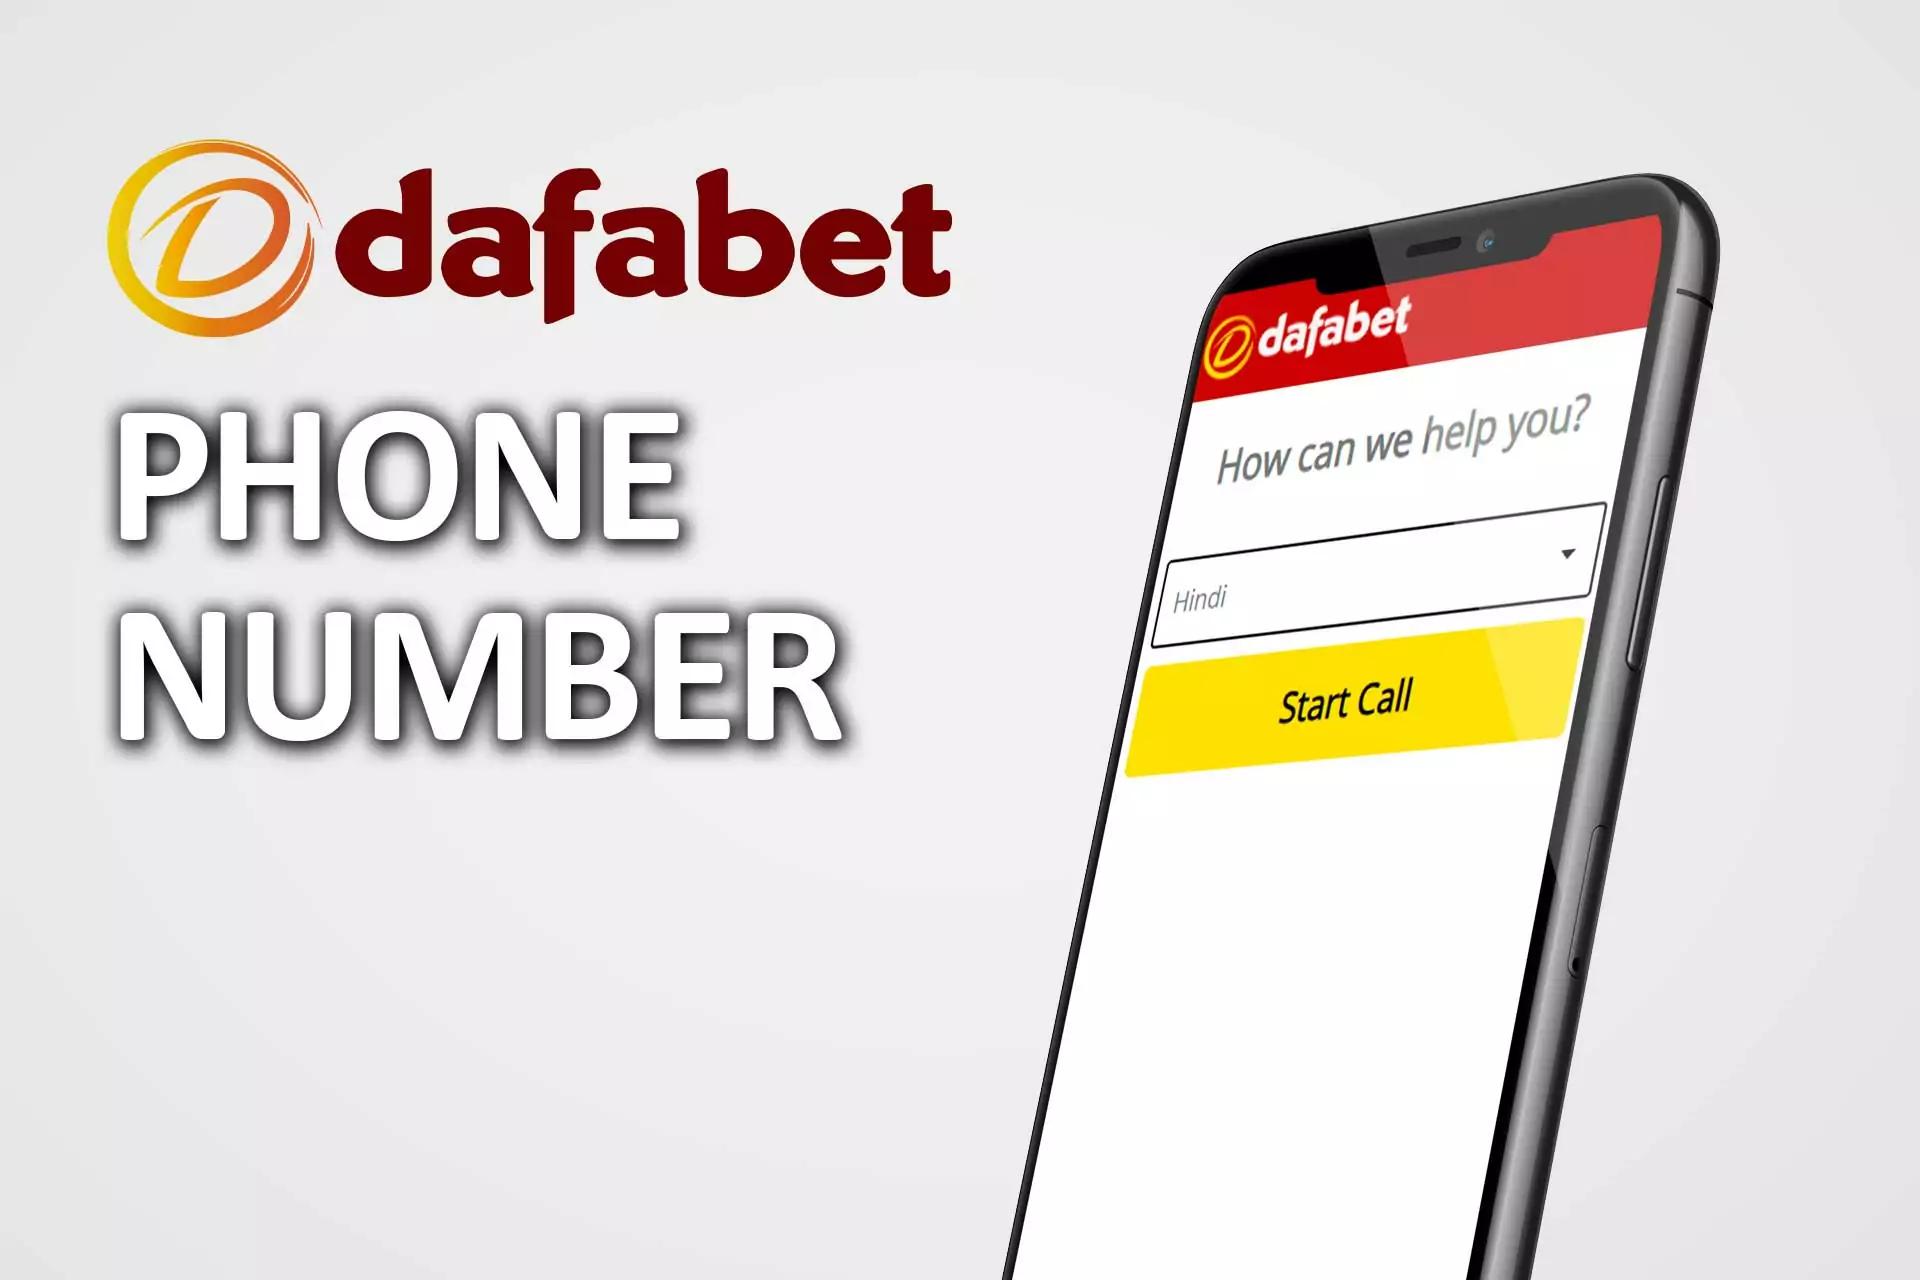 Dafabet support team speaks Hindi.